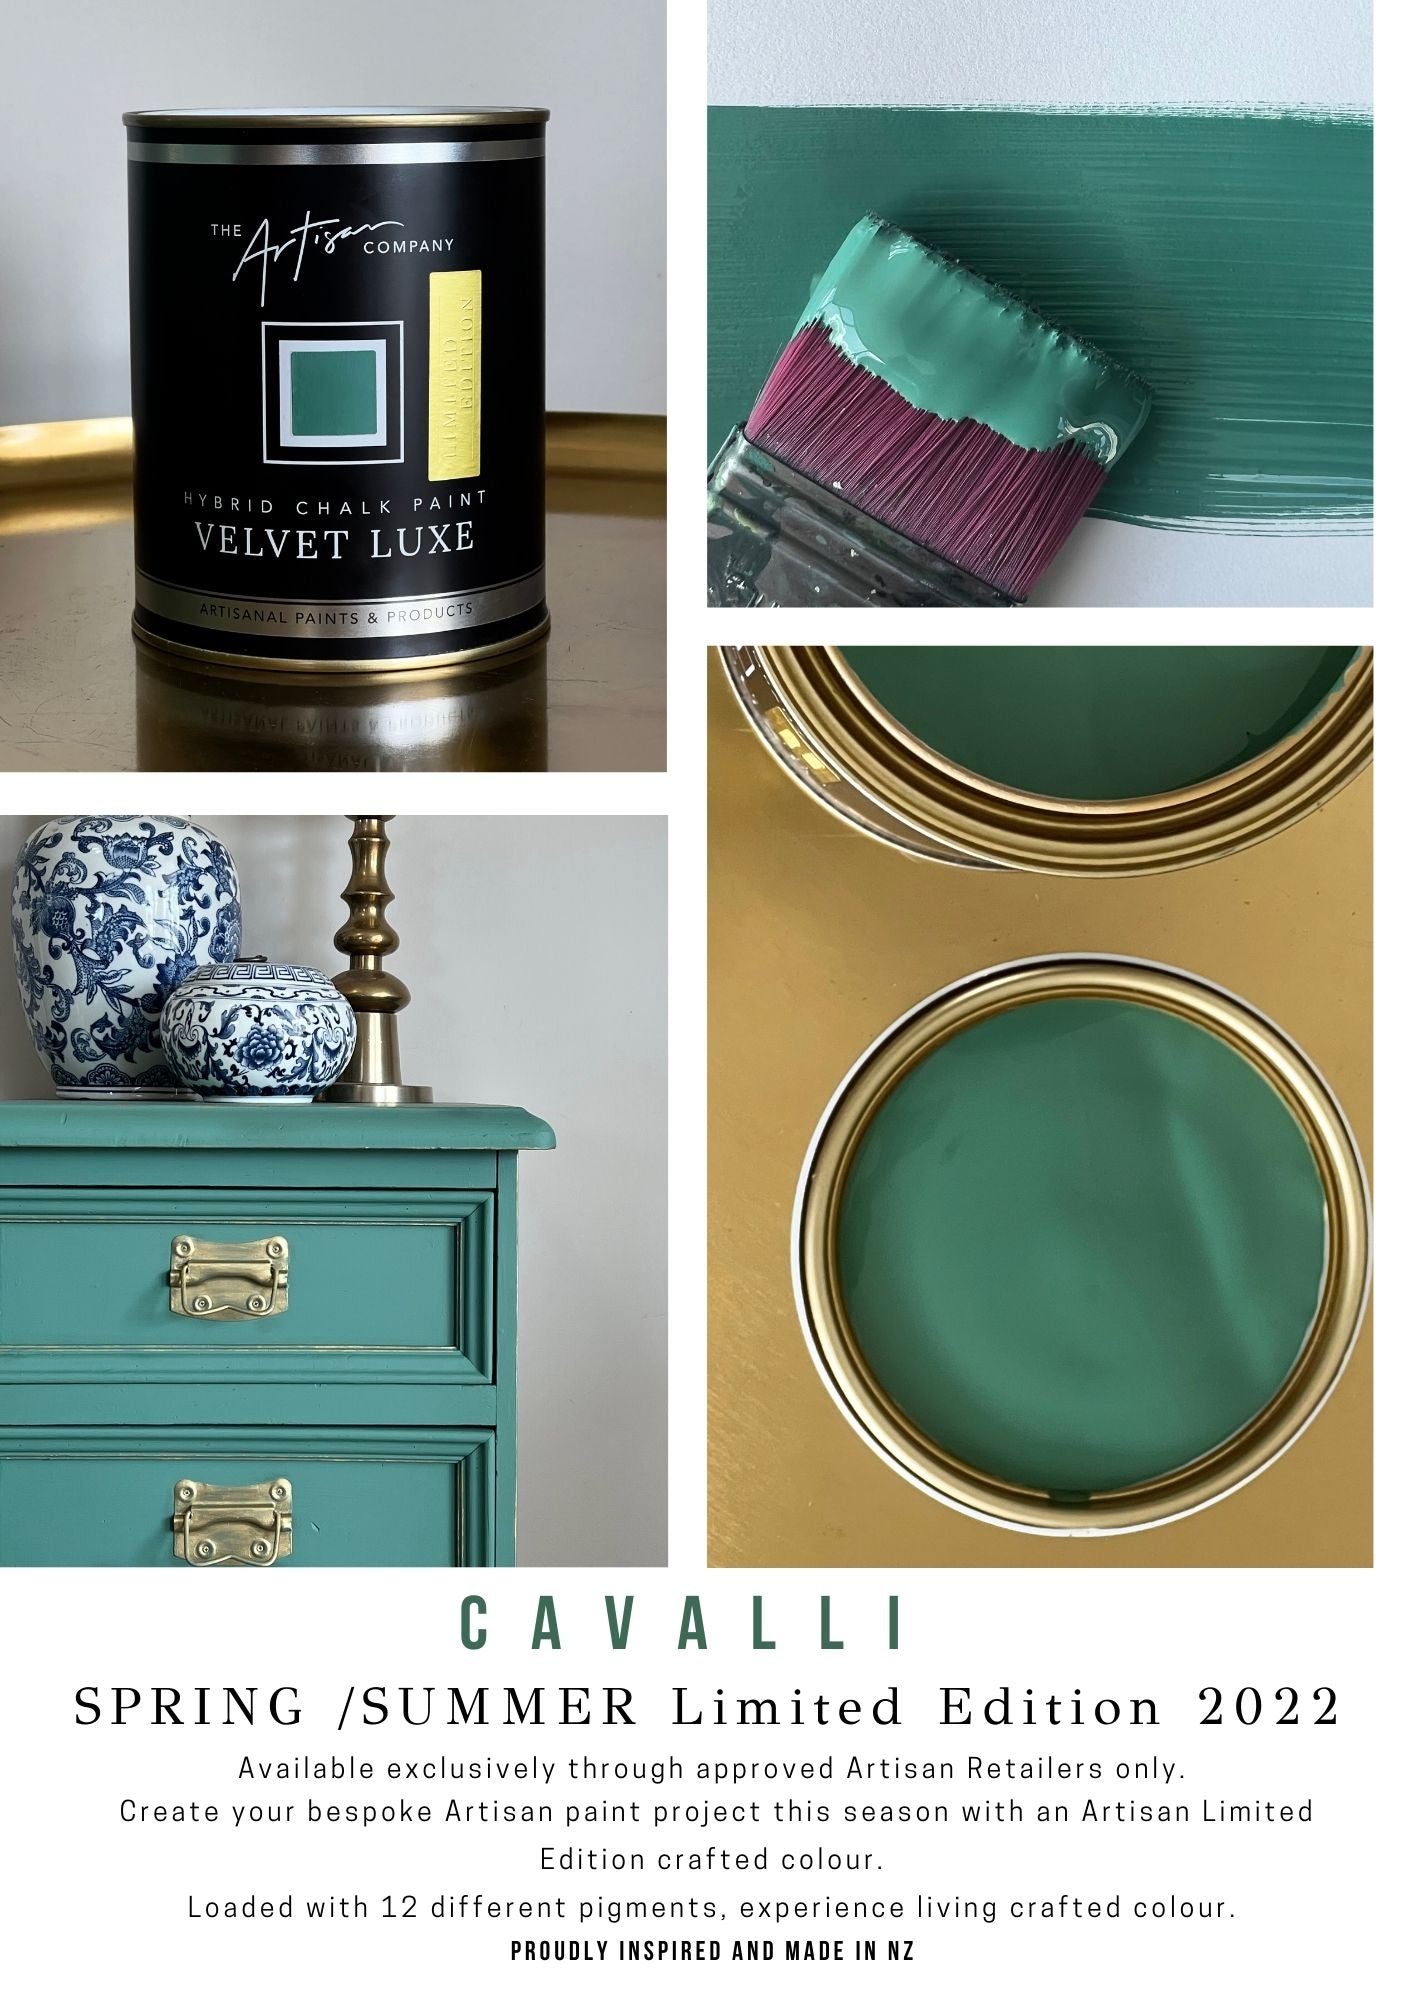 Introducing Cavalli